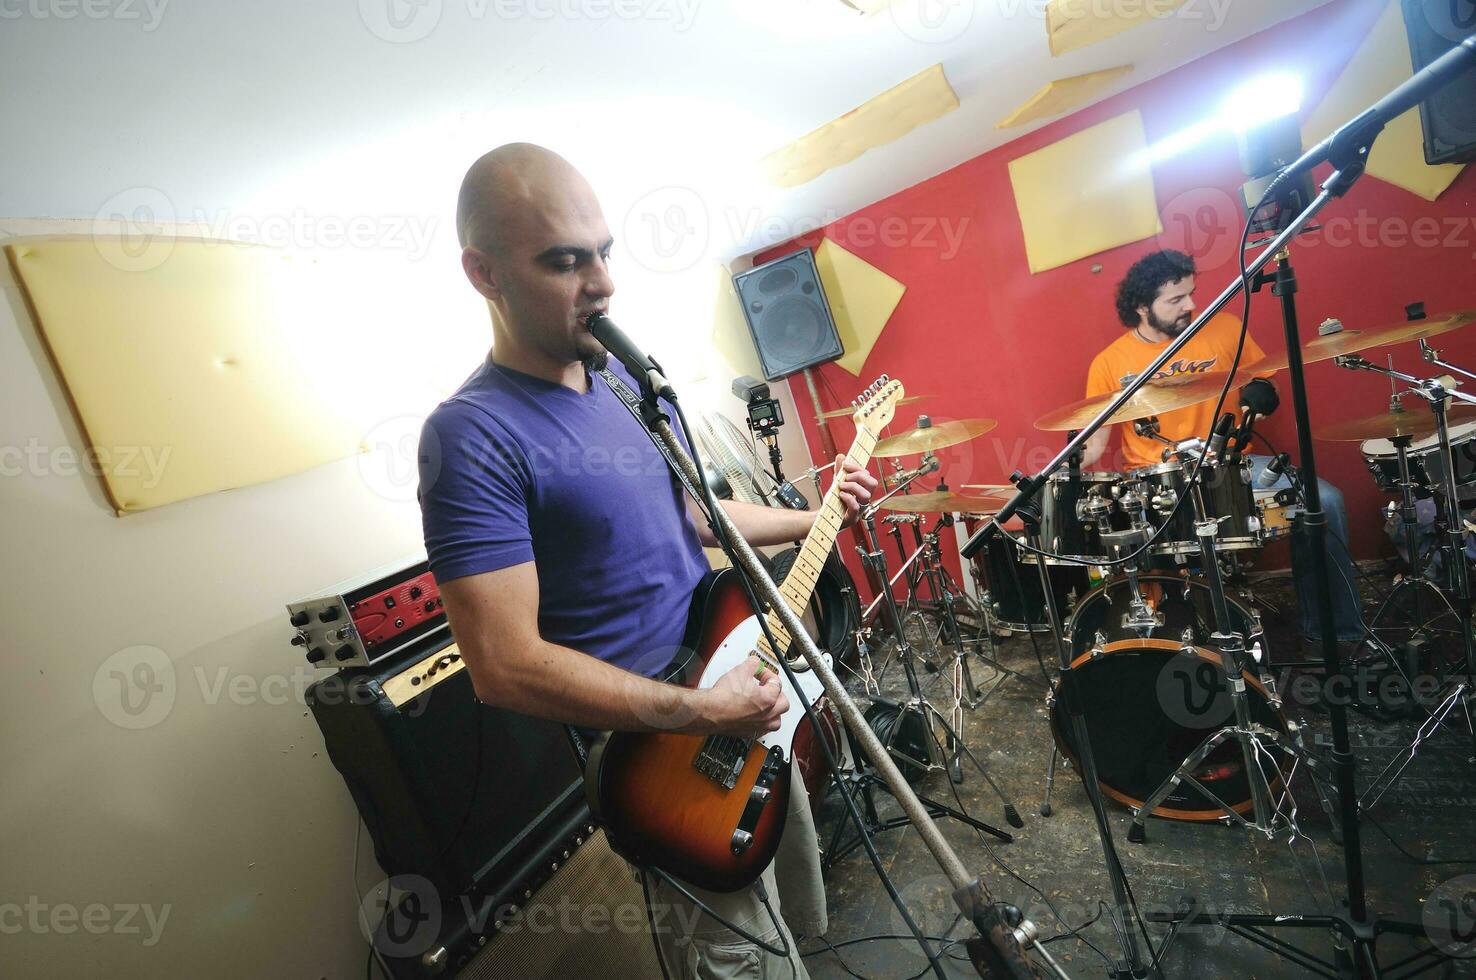 muziekband heeft training in garage foto